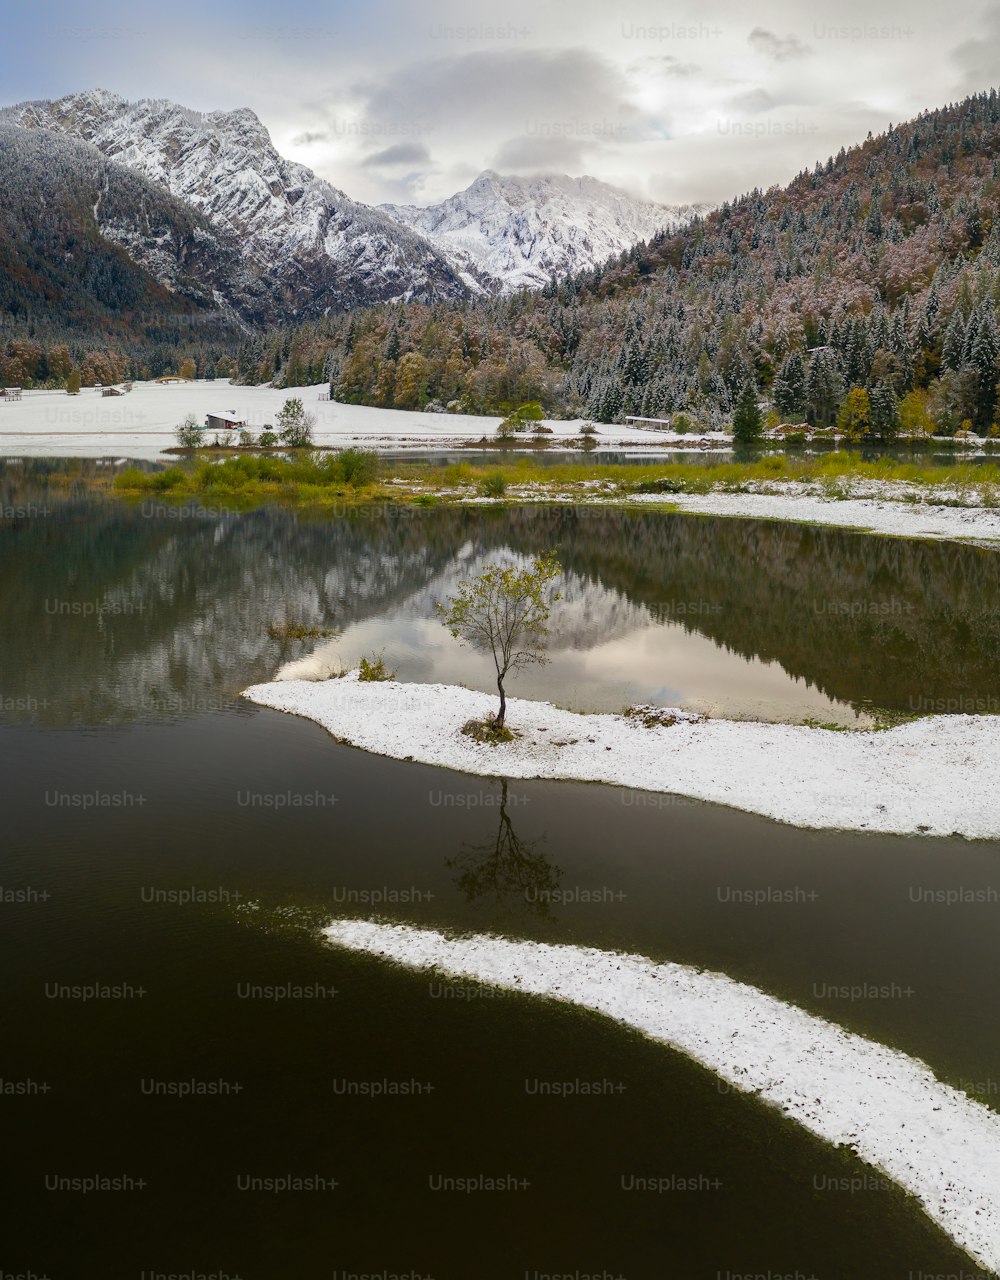 Un petit arbre se trouve au milieu d’un lac